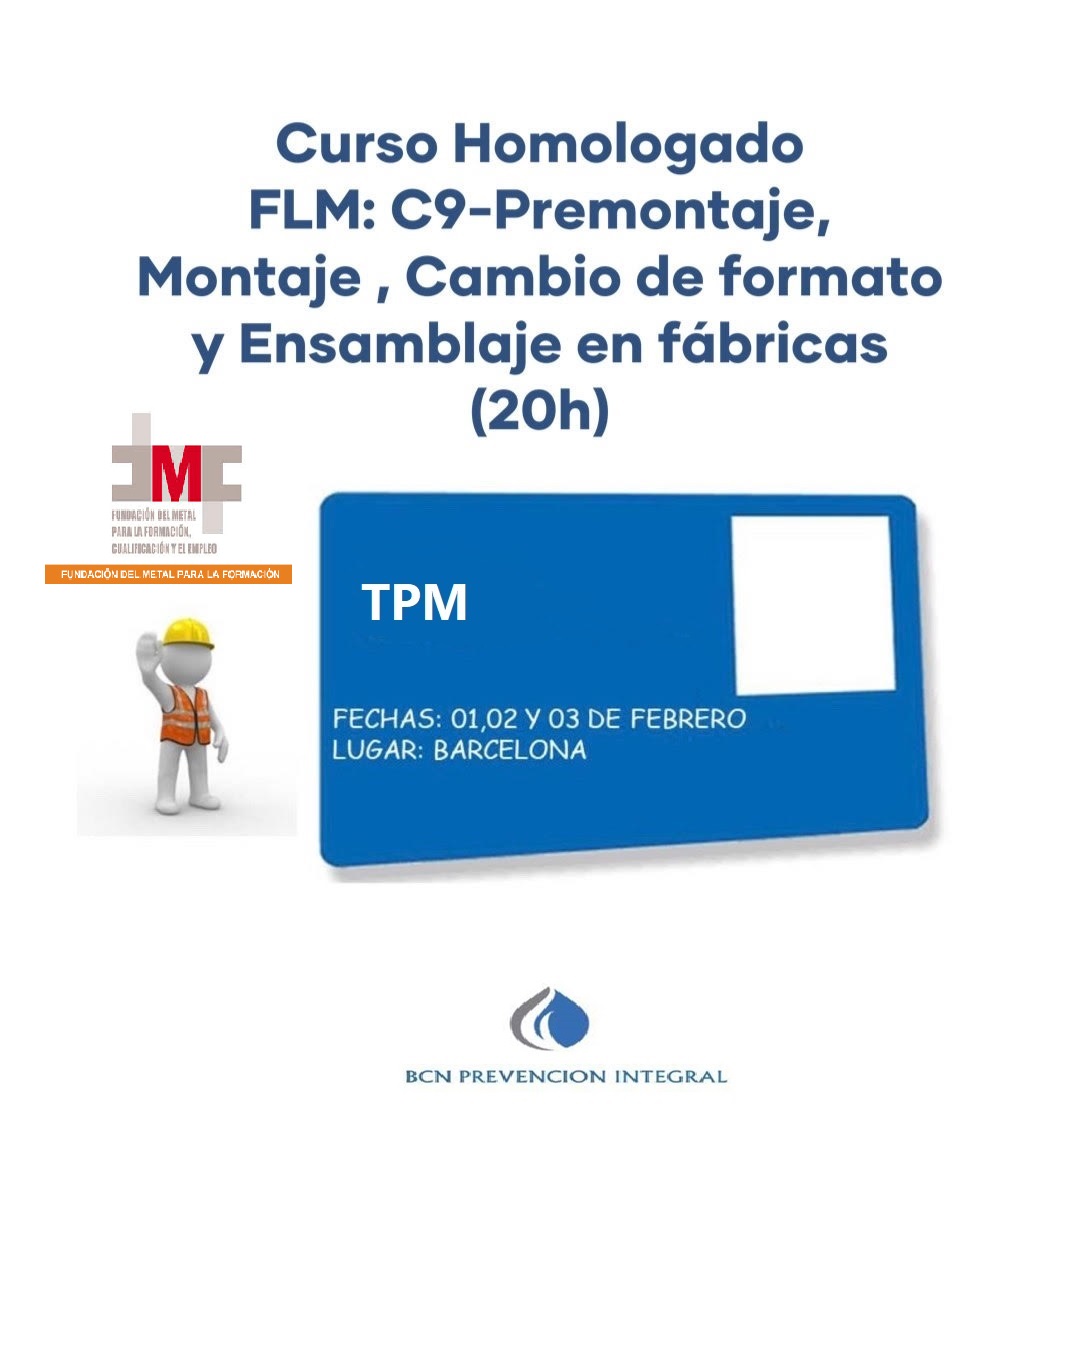 TPM C.9 - OPERARIOS EN ACTIVIDADES DE PRE MONTAJE, MONTAJE, CAMBIO DE FORMATO,  Y ENSAMBLAJE DE FABRICAS (20H) @ BCN PREVENCION INTEGRAL